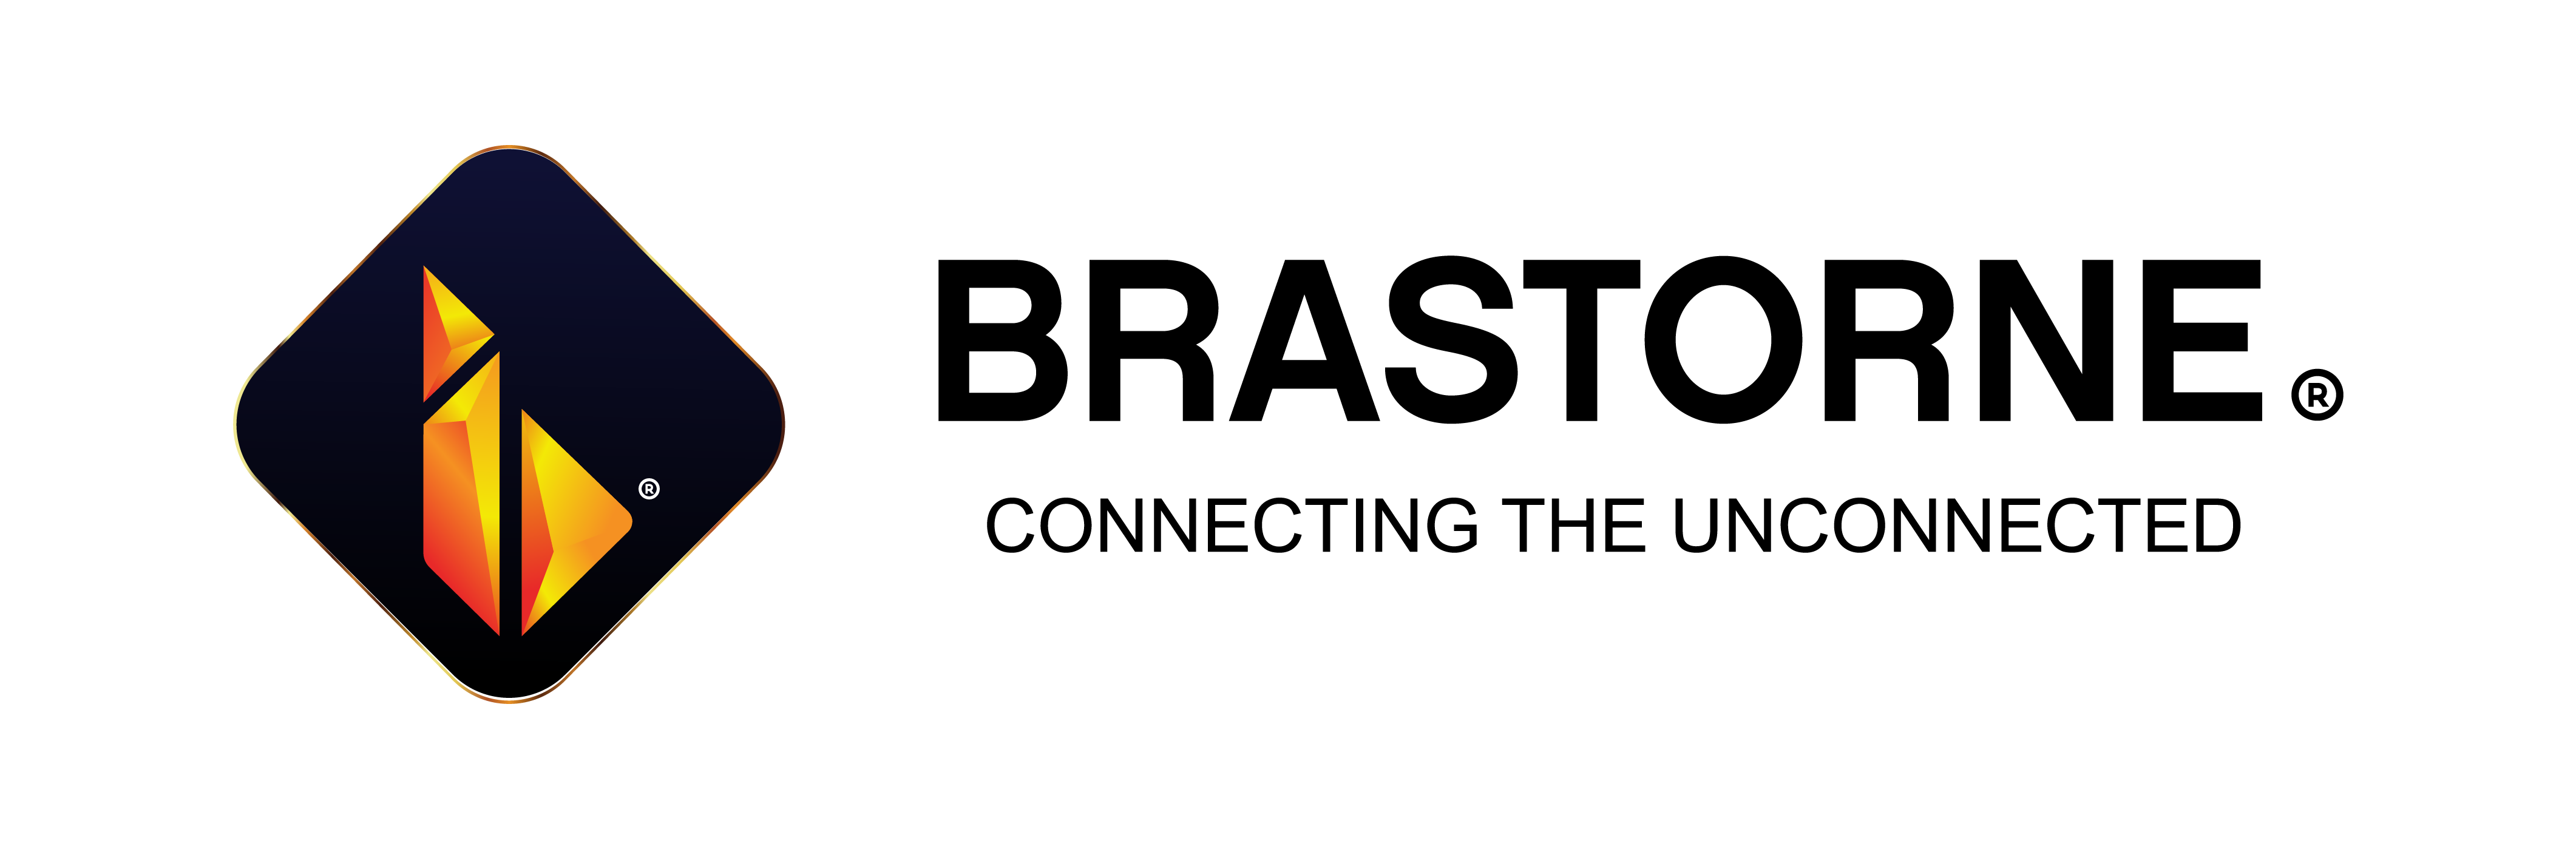 brastorne logo clear background